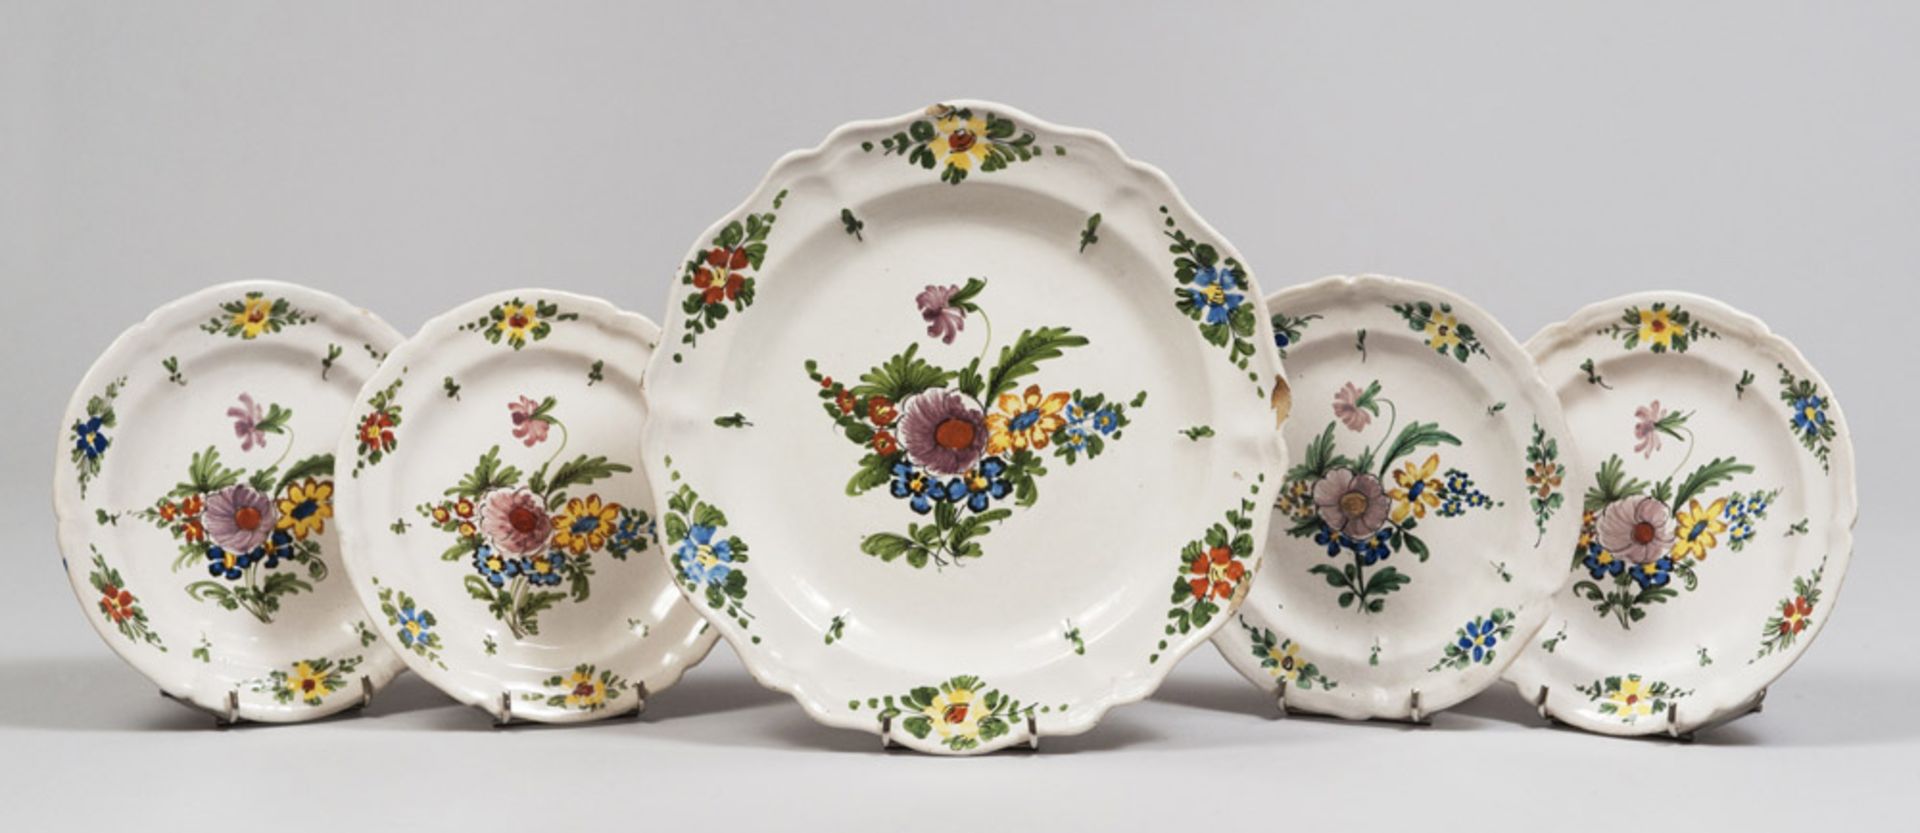 Five majolica dishes, Venetian late 19th century. Diameters cm. 20 and cm. 28. CINQUE PIATTI IN